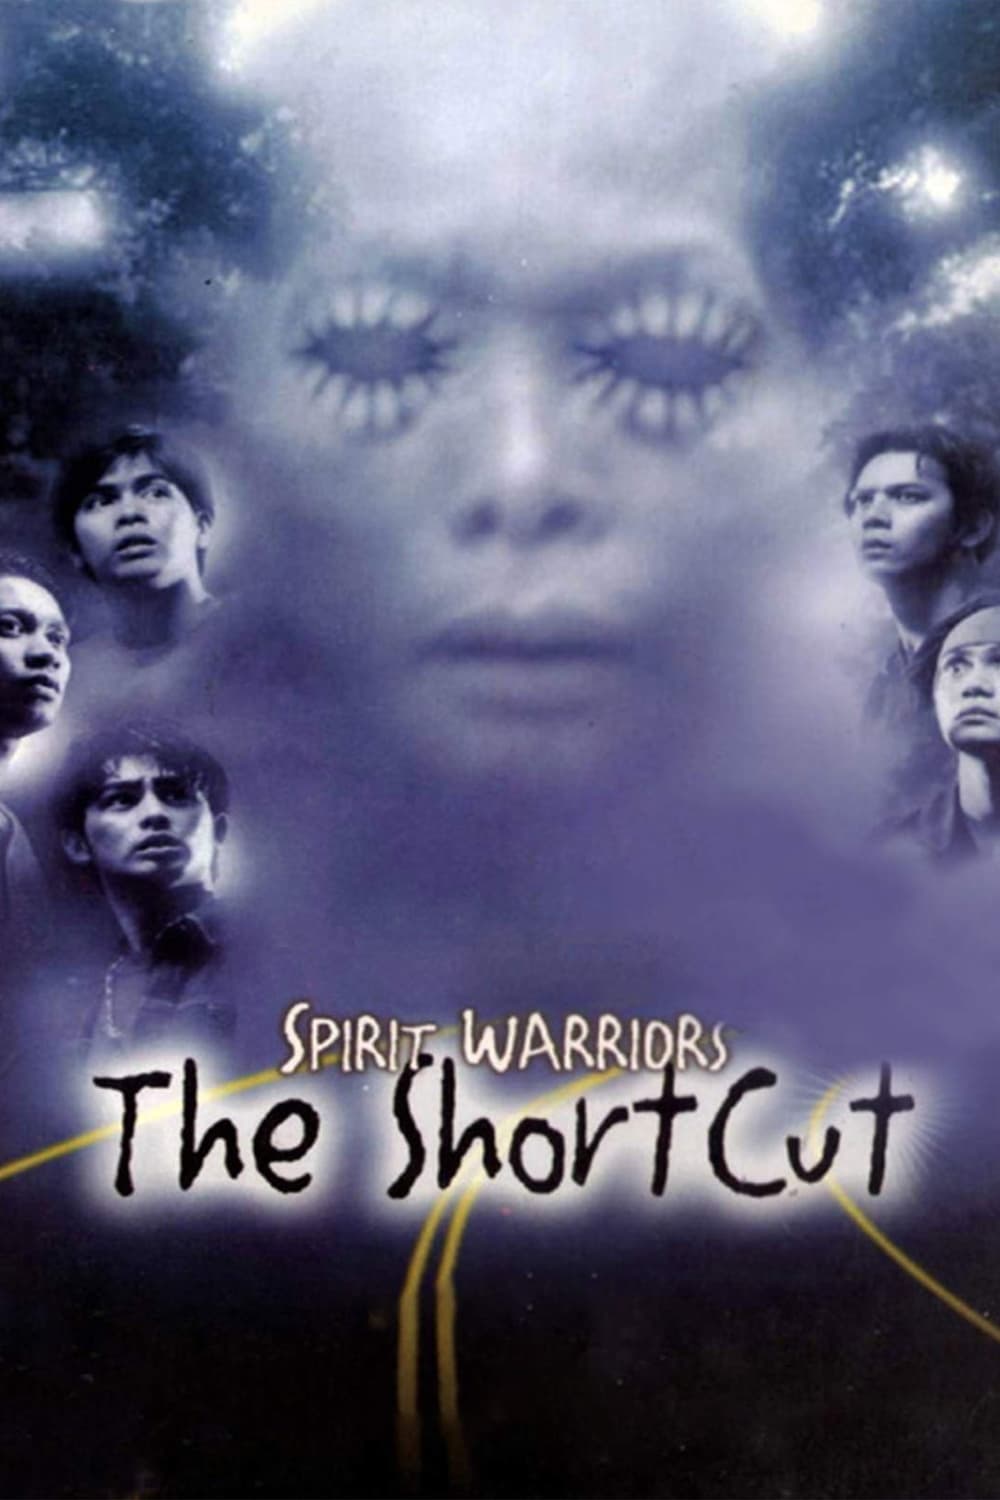 Spirit Warriors: The Shortcut (2003)